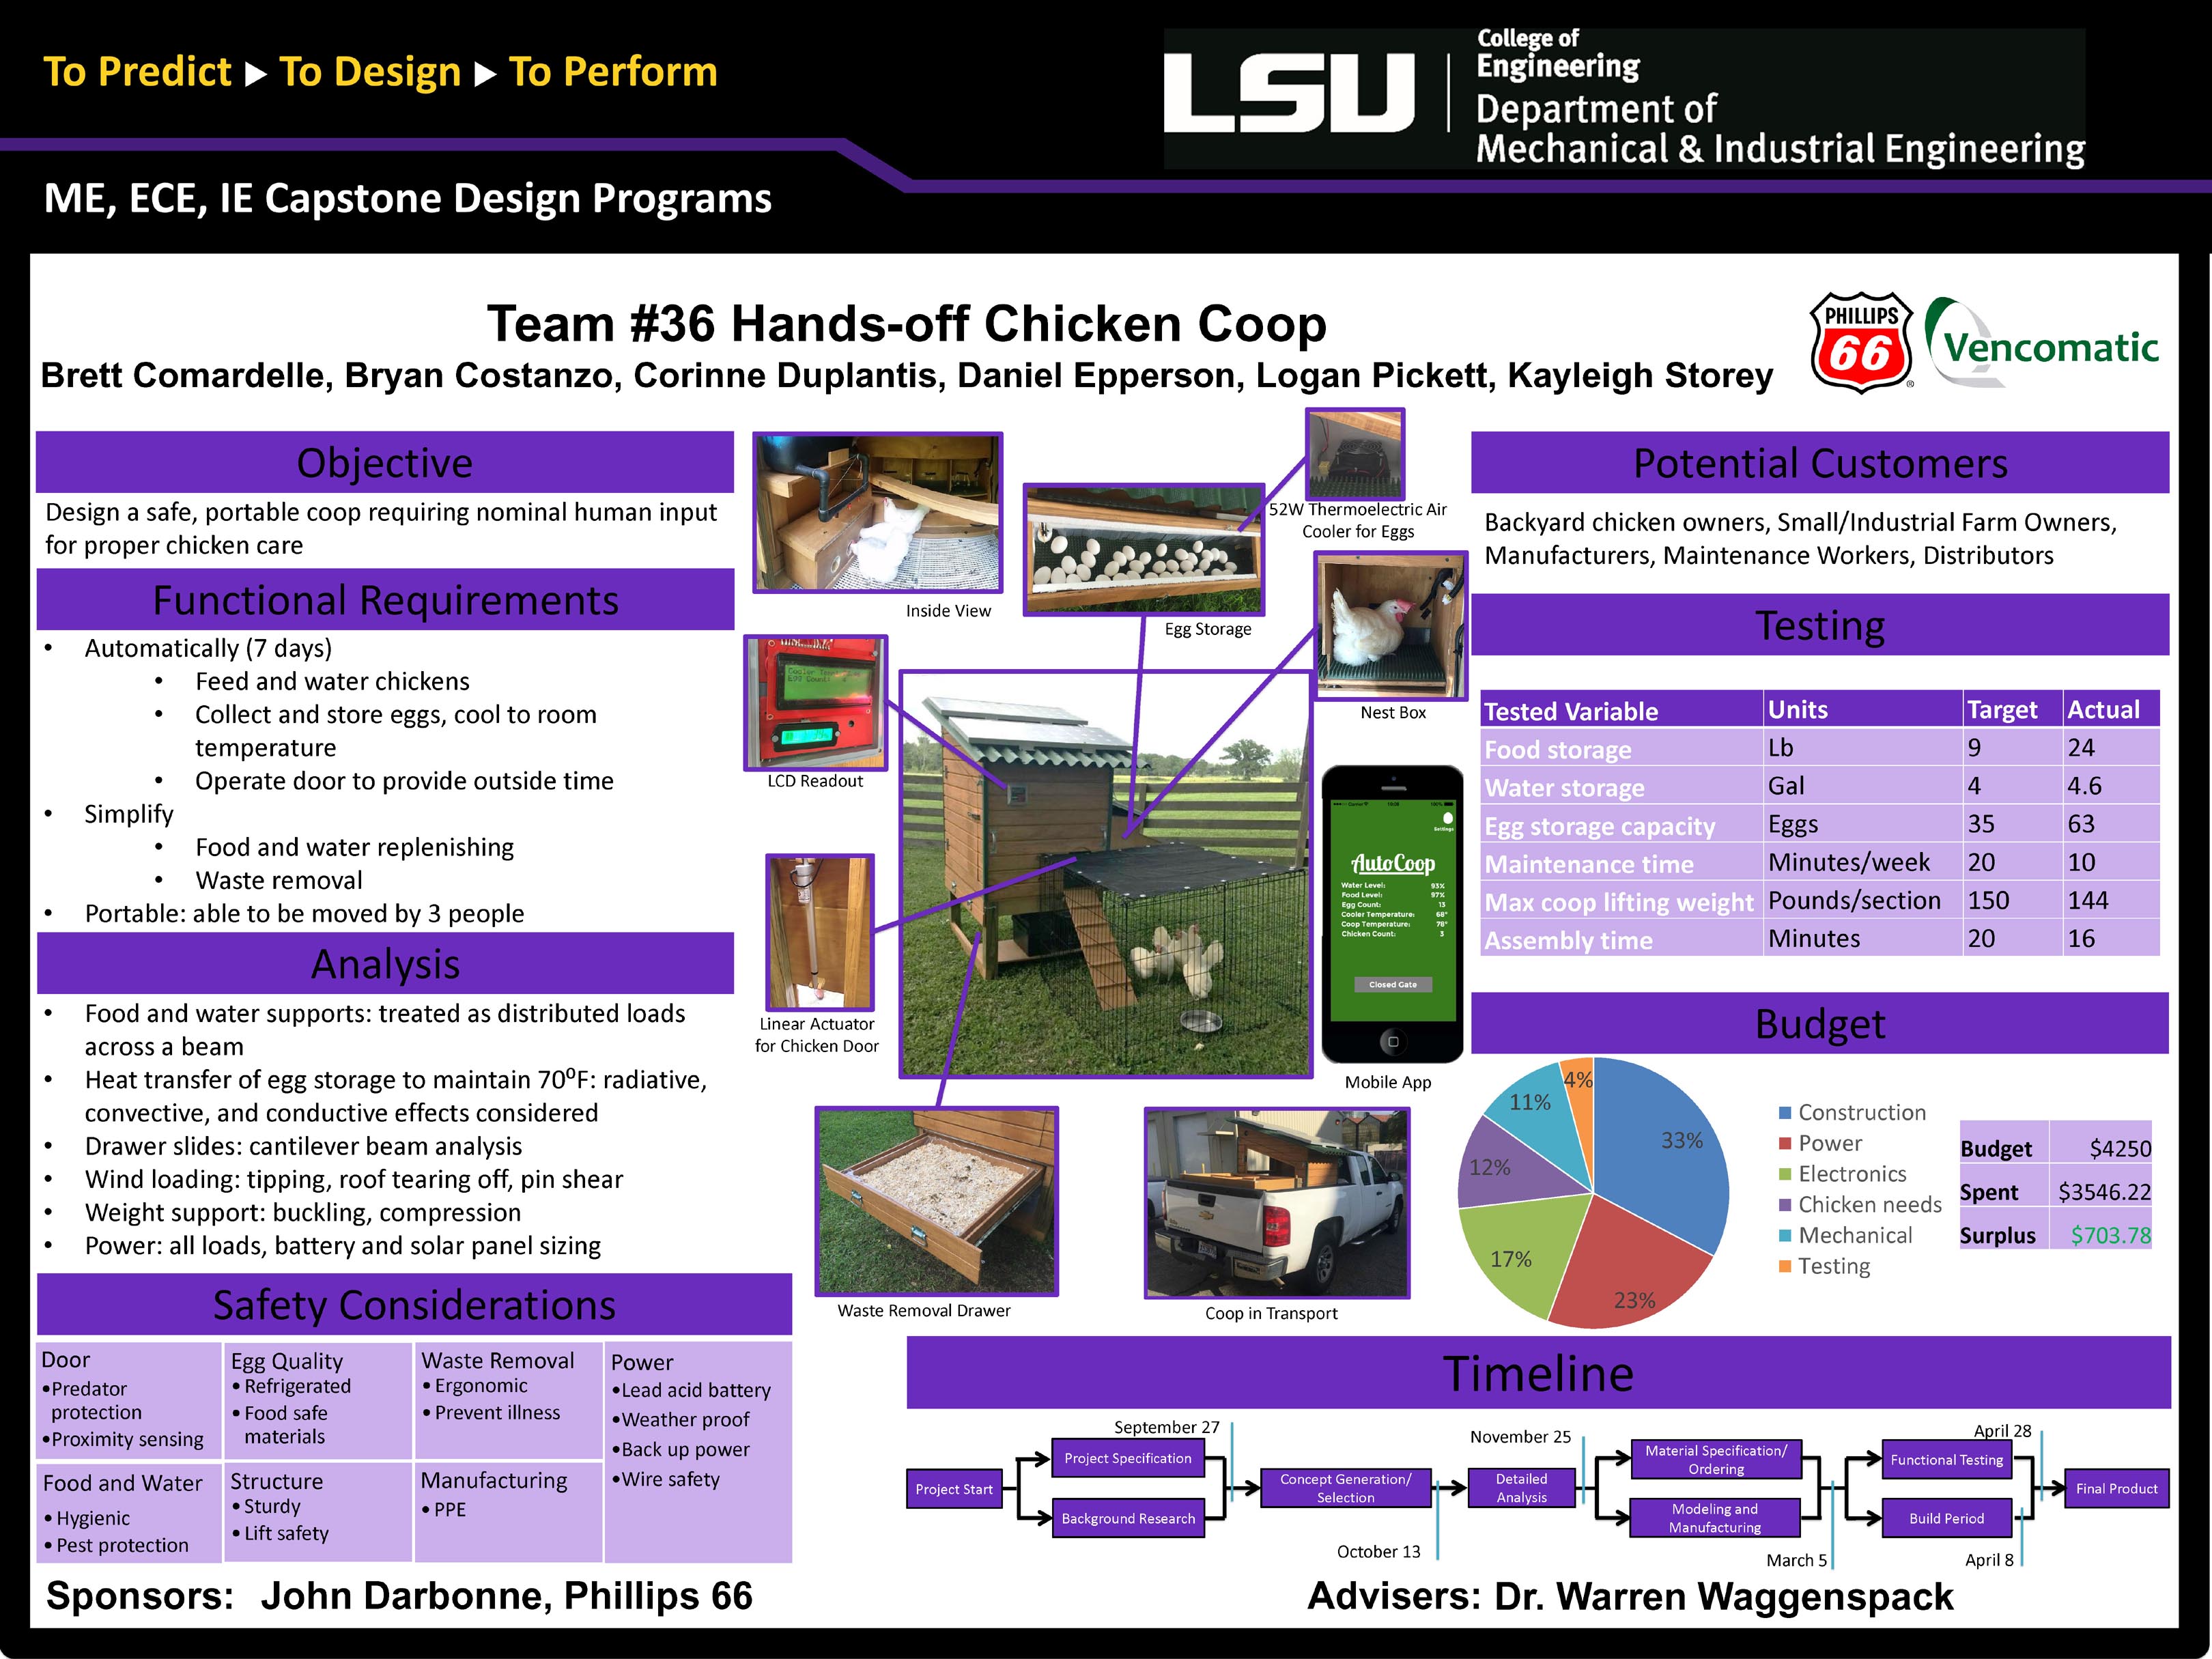 Project 36: Hands-Off Chicken Coop